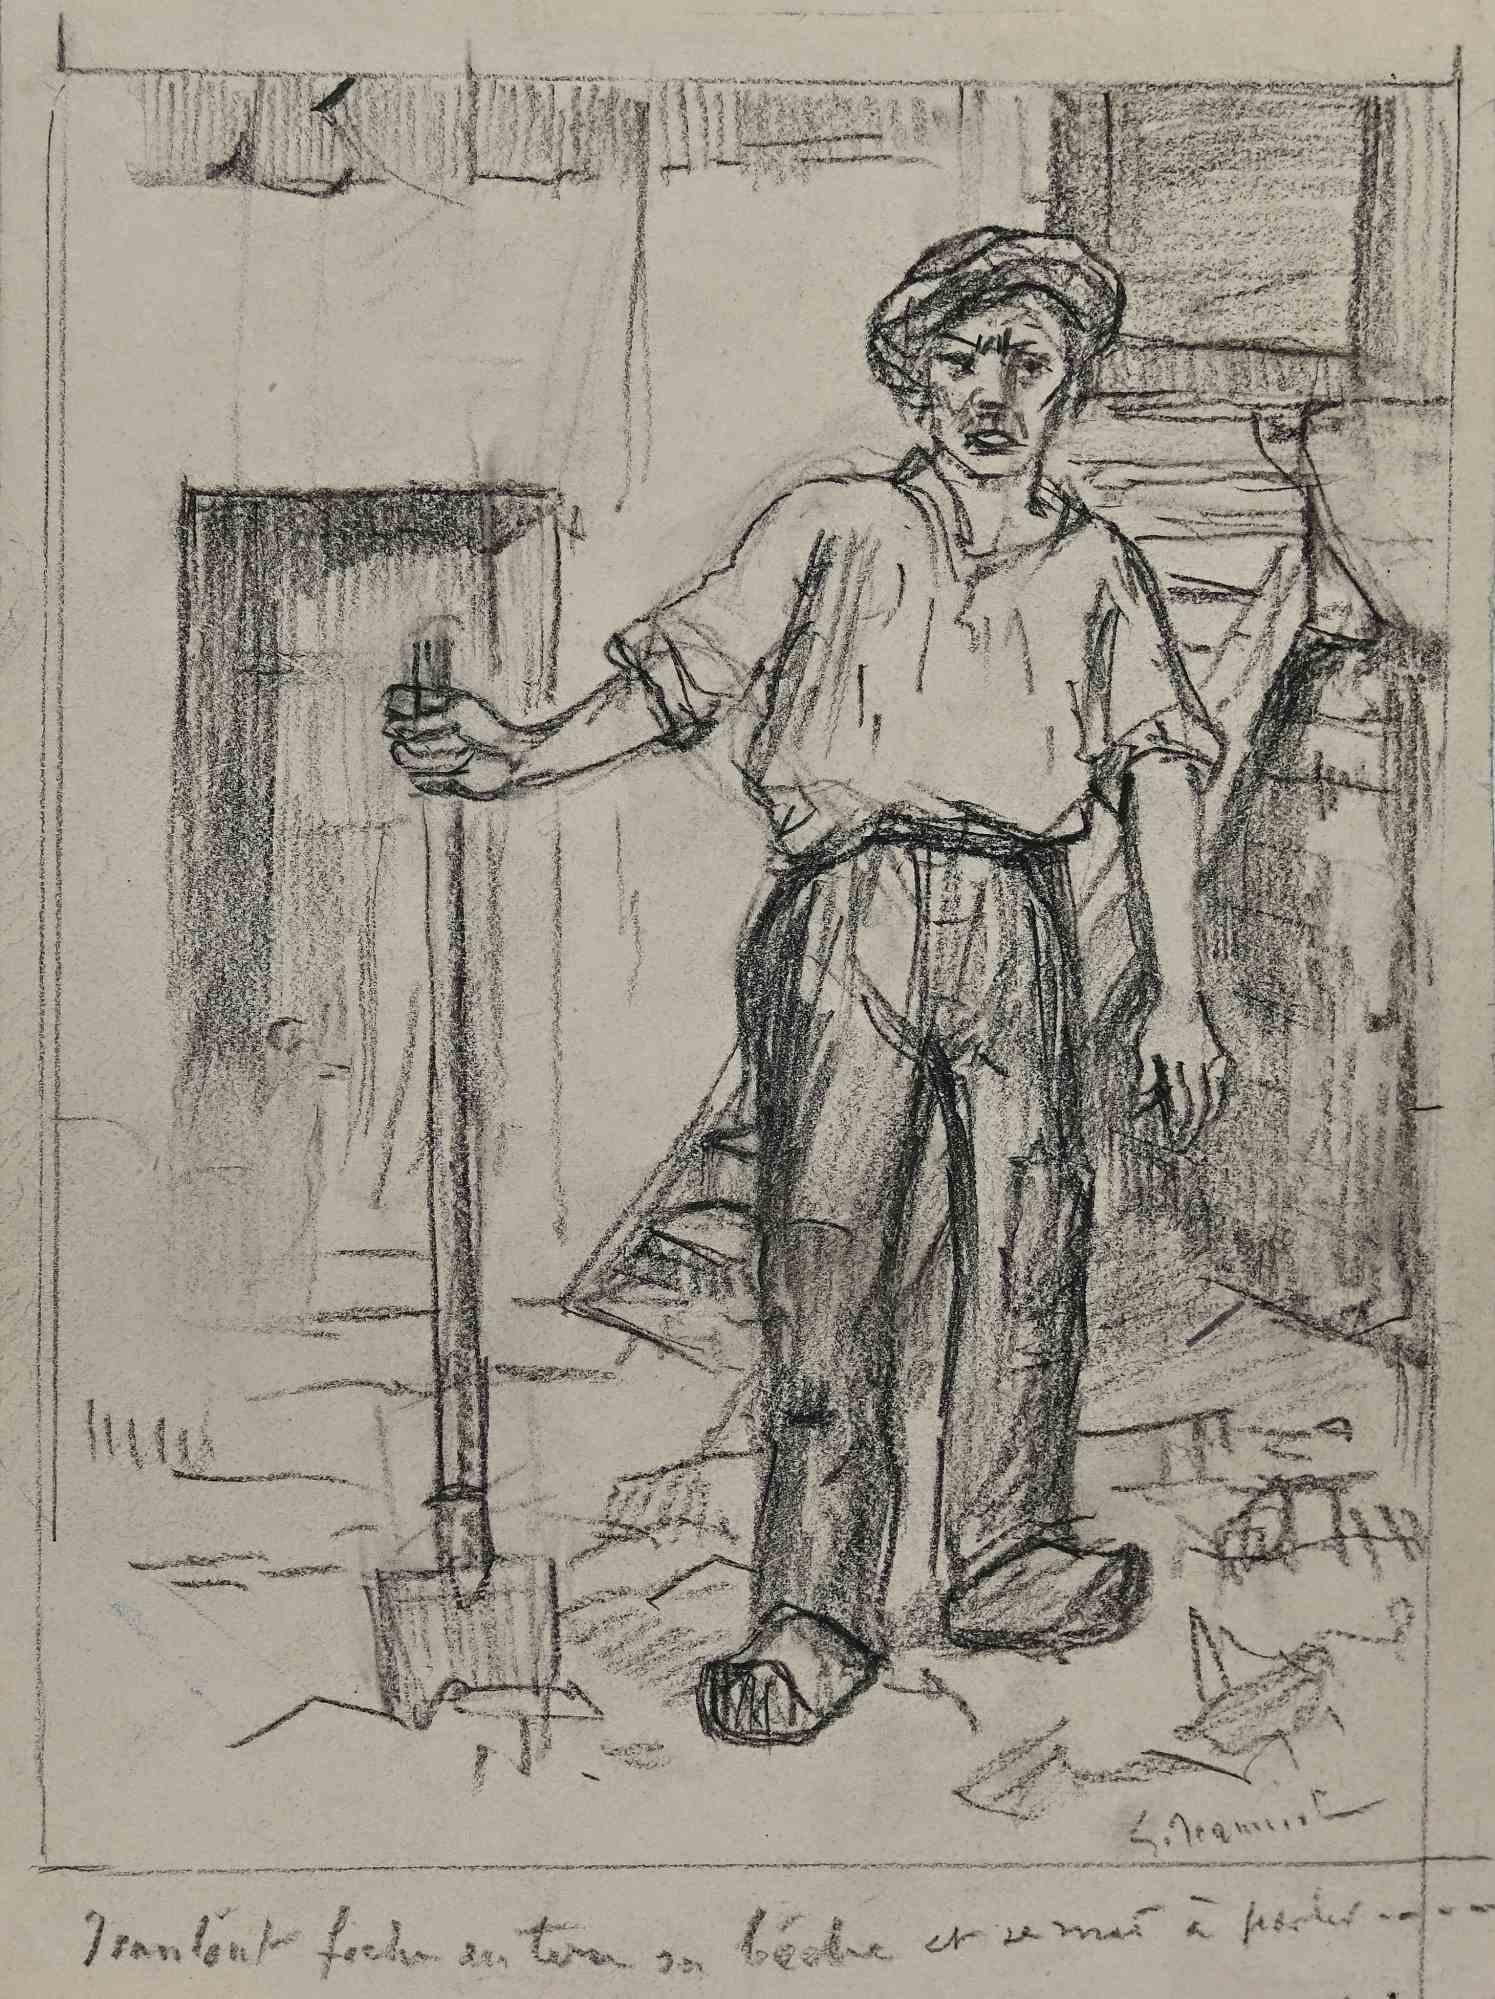 Worker ist eine Originalzeichnung auf Papier des Malers Pierre Georges Jeanniot (1848-1934).

Zeichnen mit Kohlestift.

Handsigniert auf der Unterseite.

Guter Zustand, außer dass er gealtert ist.

Pierre-Georges Jeanniot (1848-1934) war ein